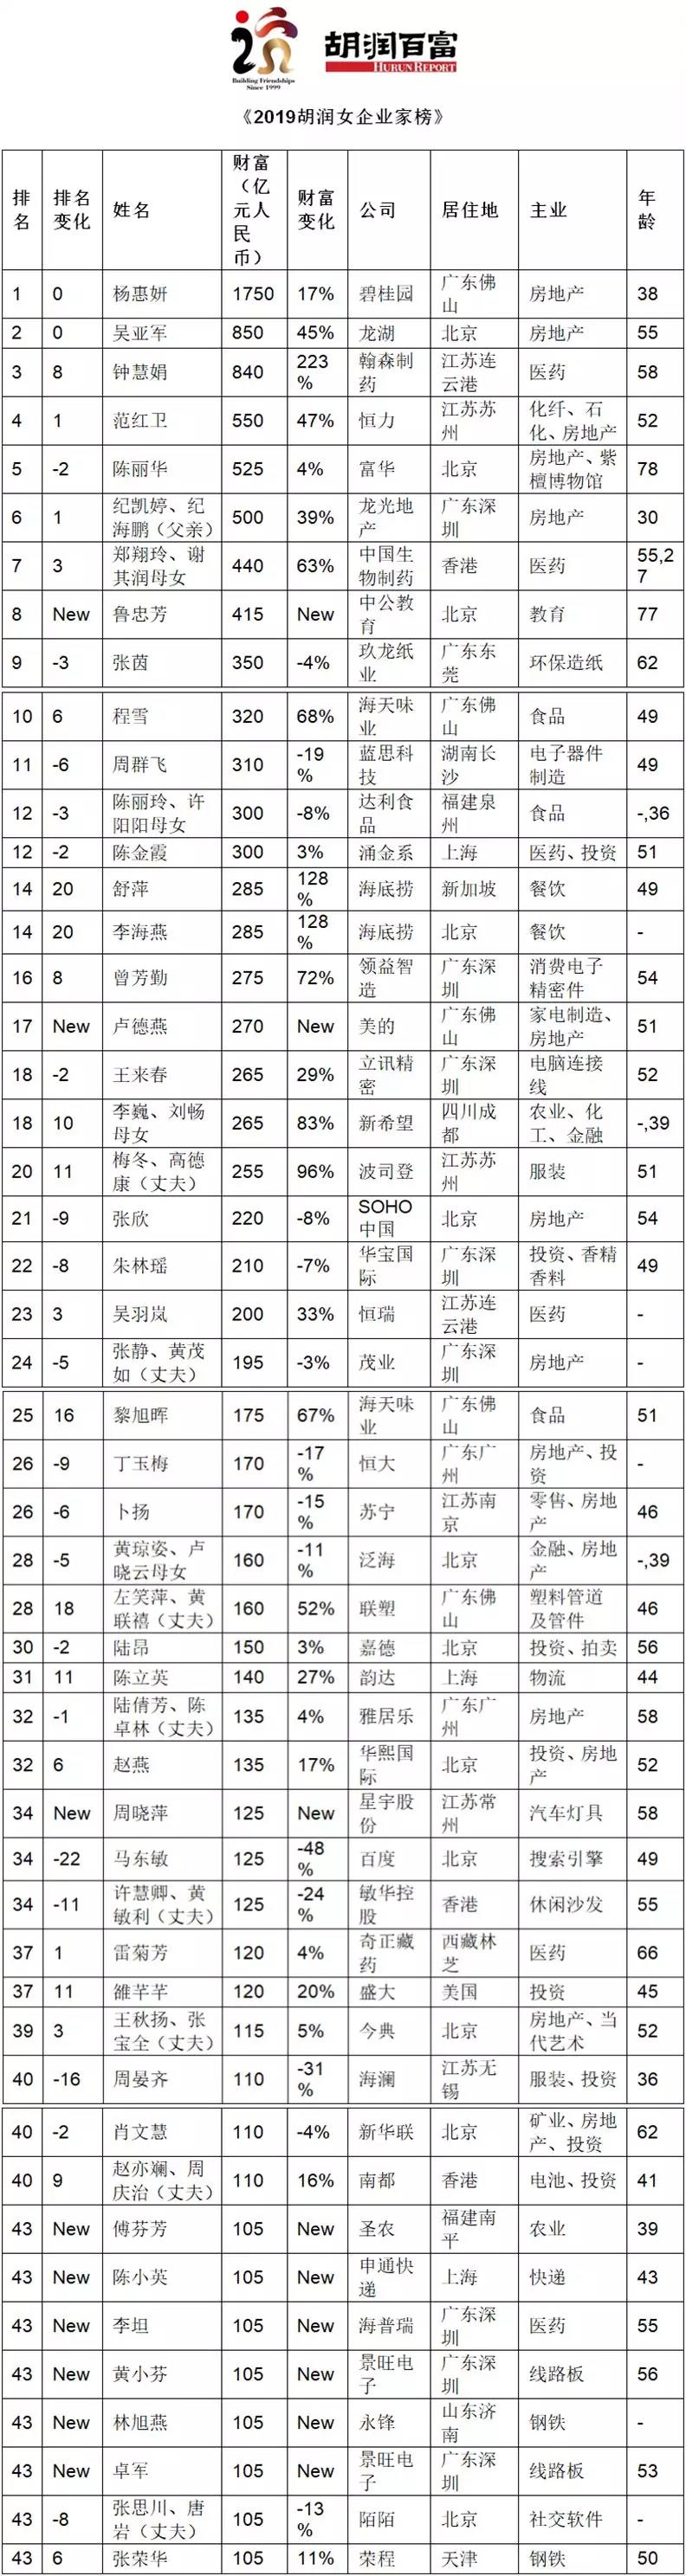 2019胡润女企业家榜：杨惠妍居榜首、吴亚军排第二